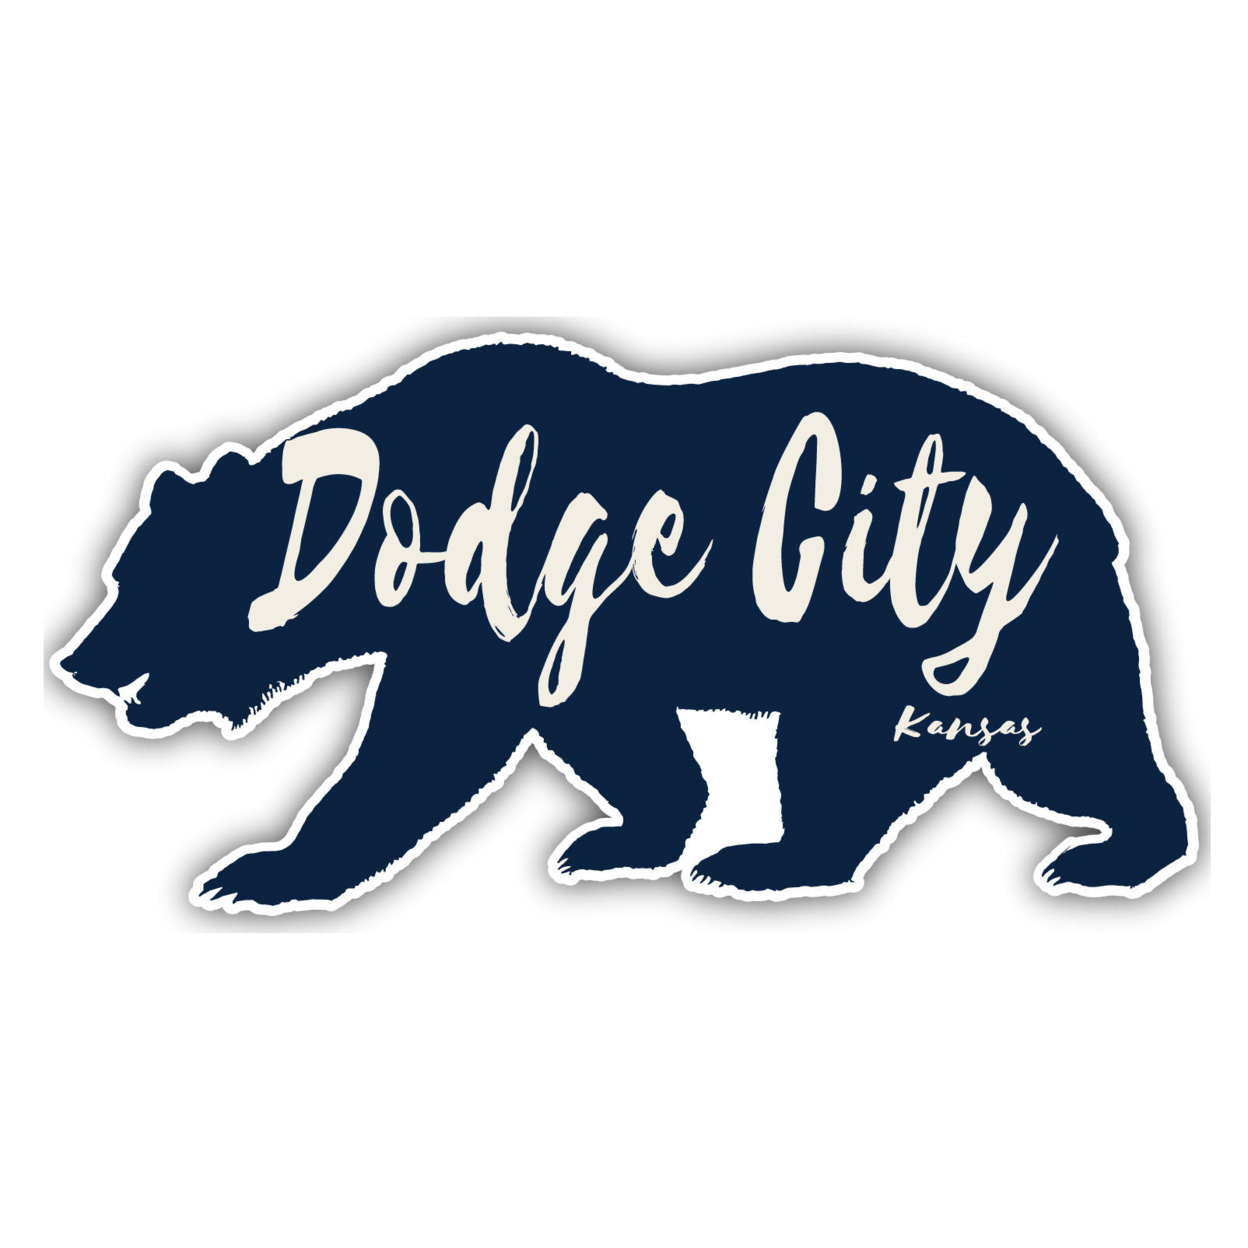 Dodge City Kansas Souvenir Decorative Stickers (Choose Theme And Size) - Single Unit, 6-Inch, Tent